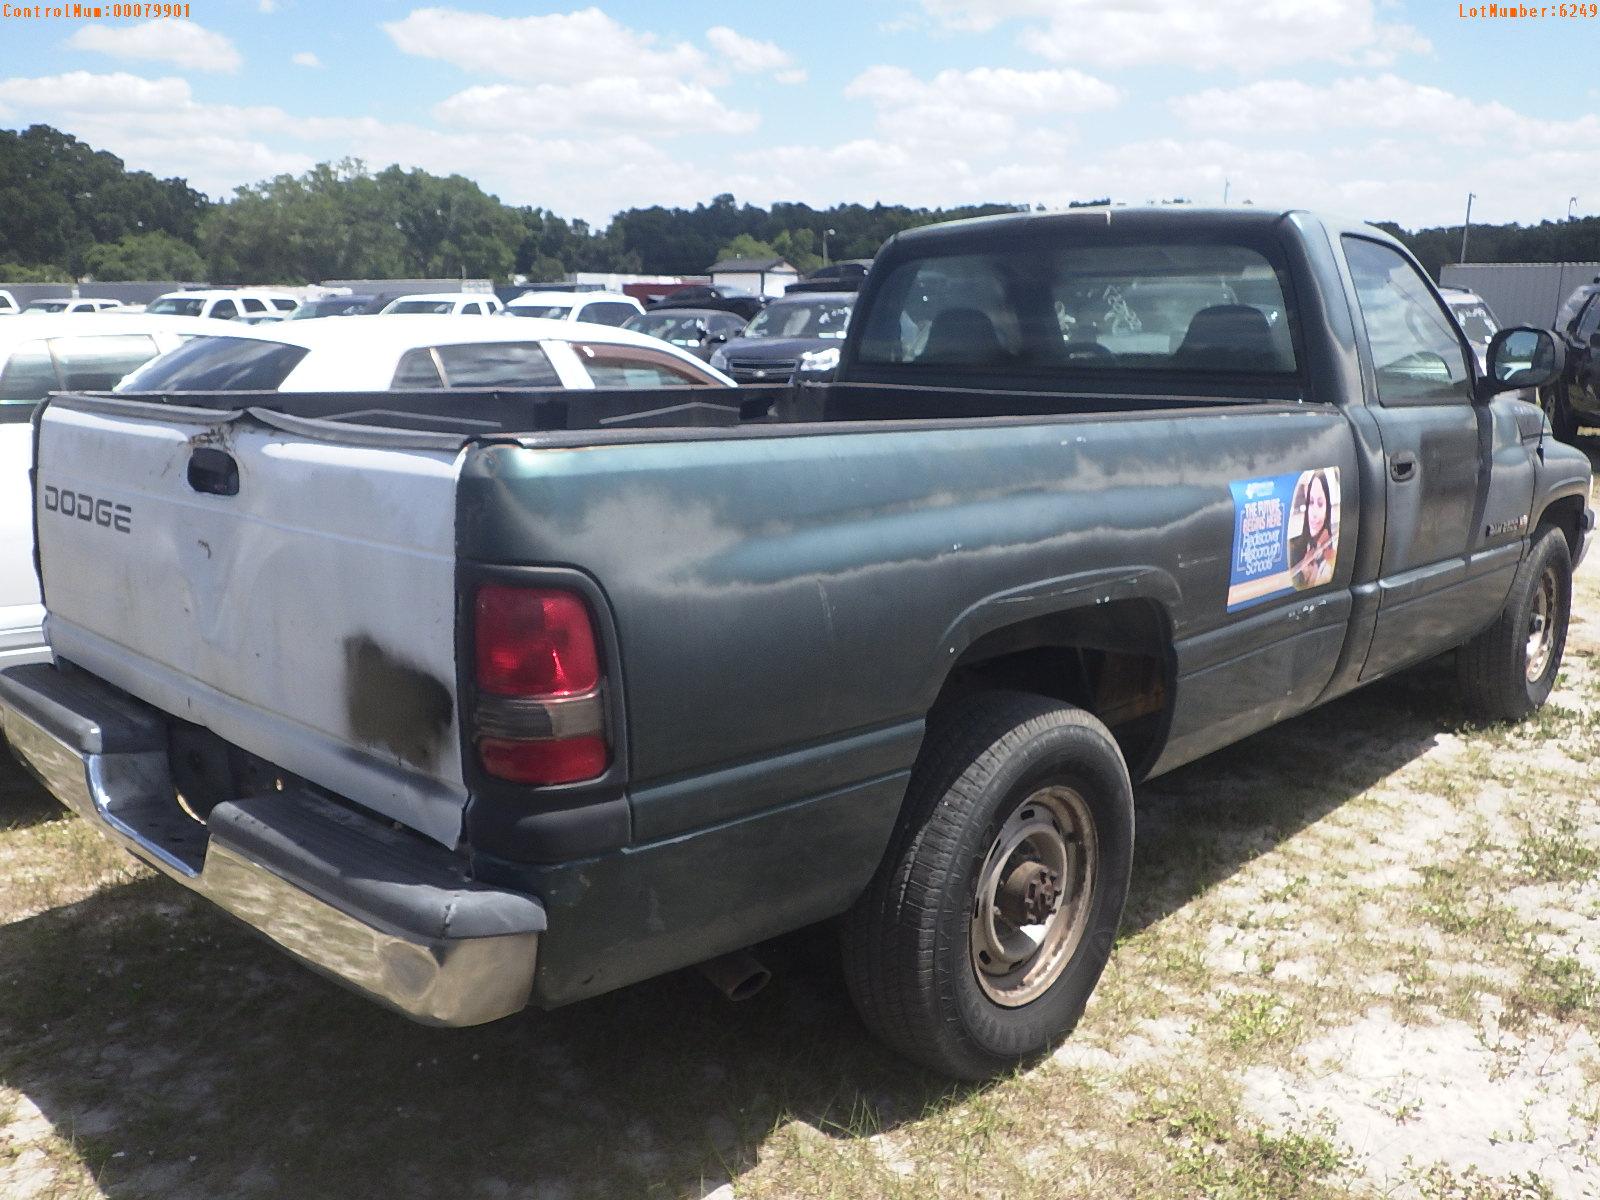 5-06249 (Trucks-Pickup 2D)  Seller: Gov-Hillsborough County School 1999 DODG RAM